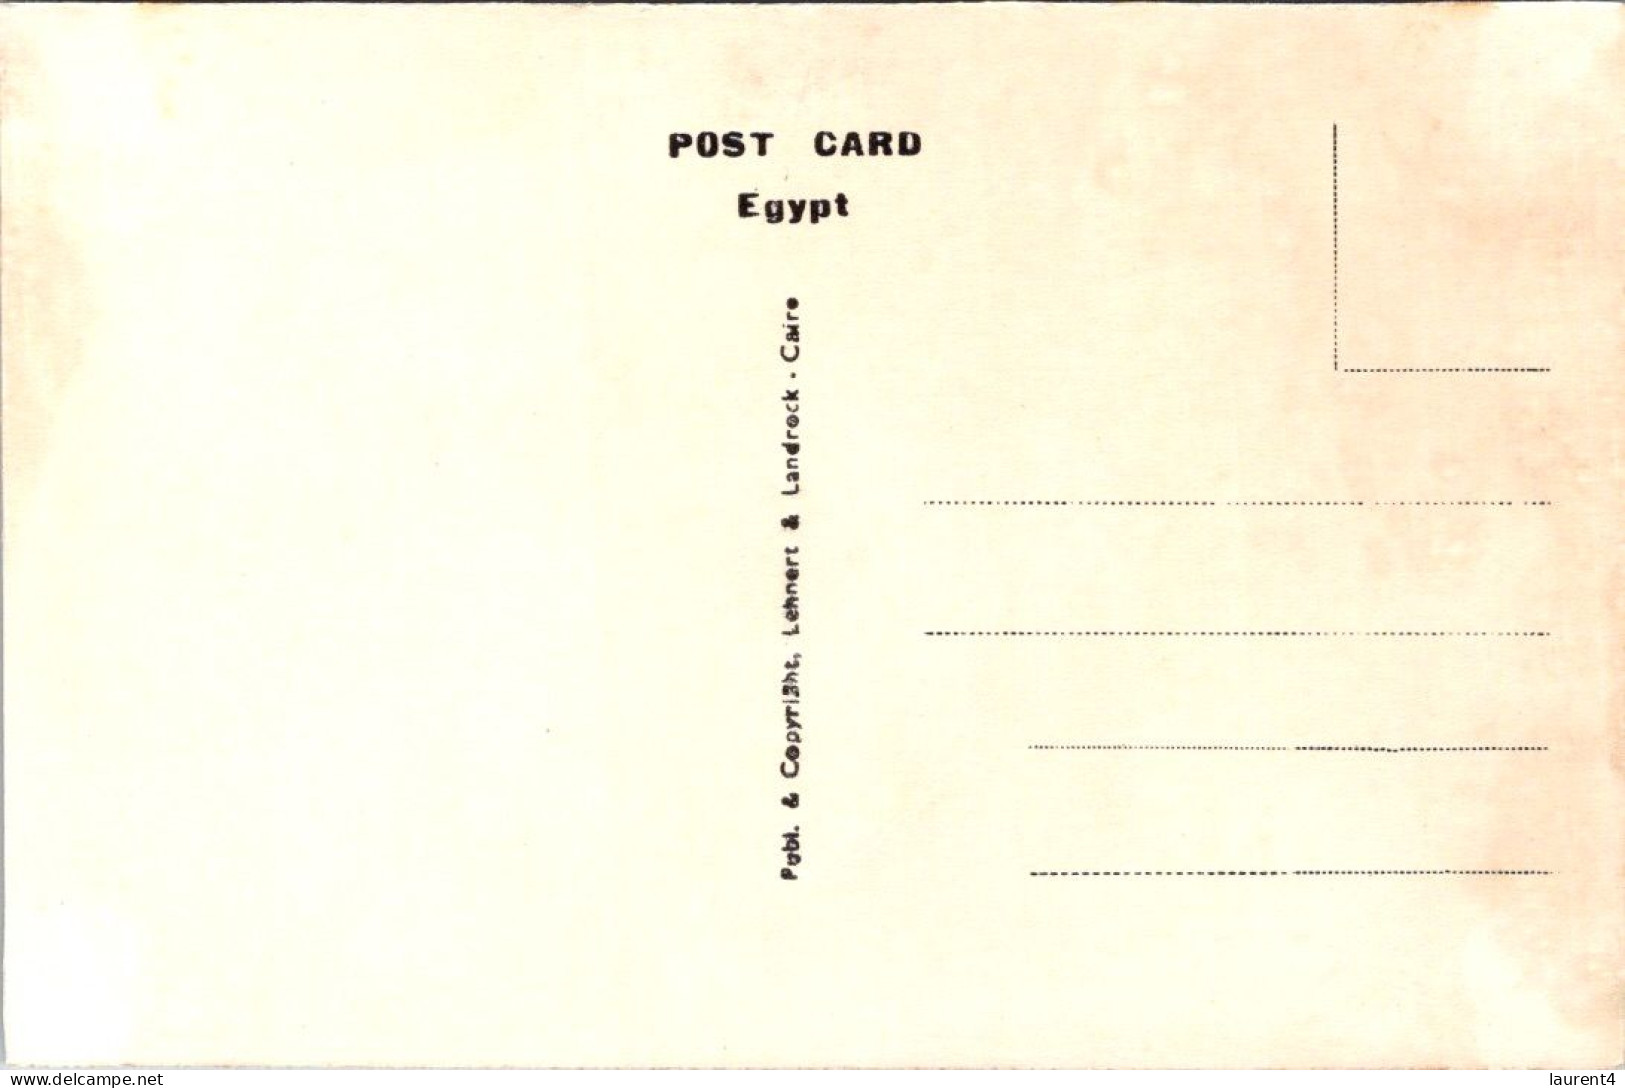 18-5-2024 (5 Z 28) Egypt (b/w Very Old) Port Saïd General View - Port-Saïd